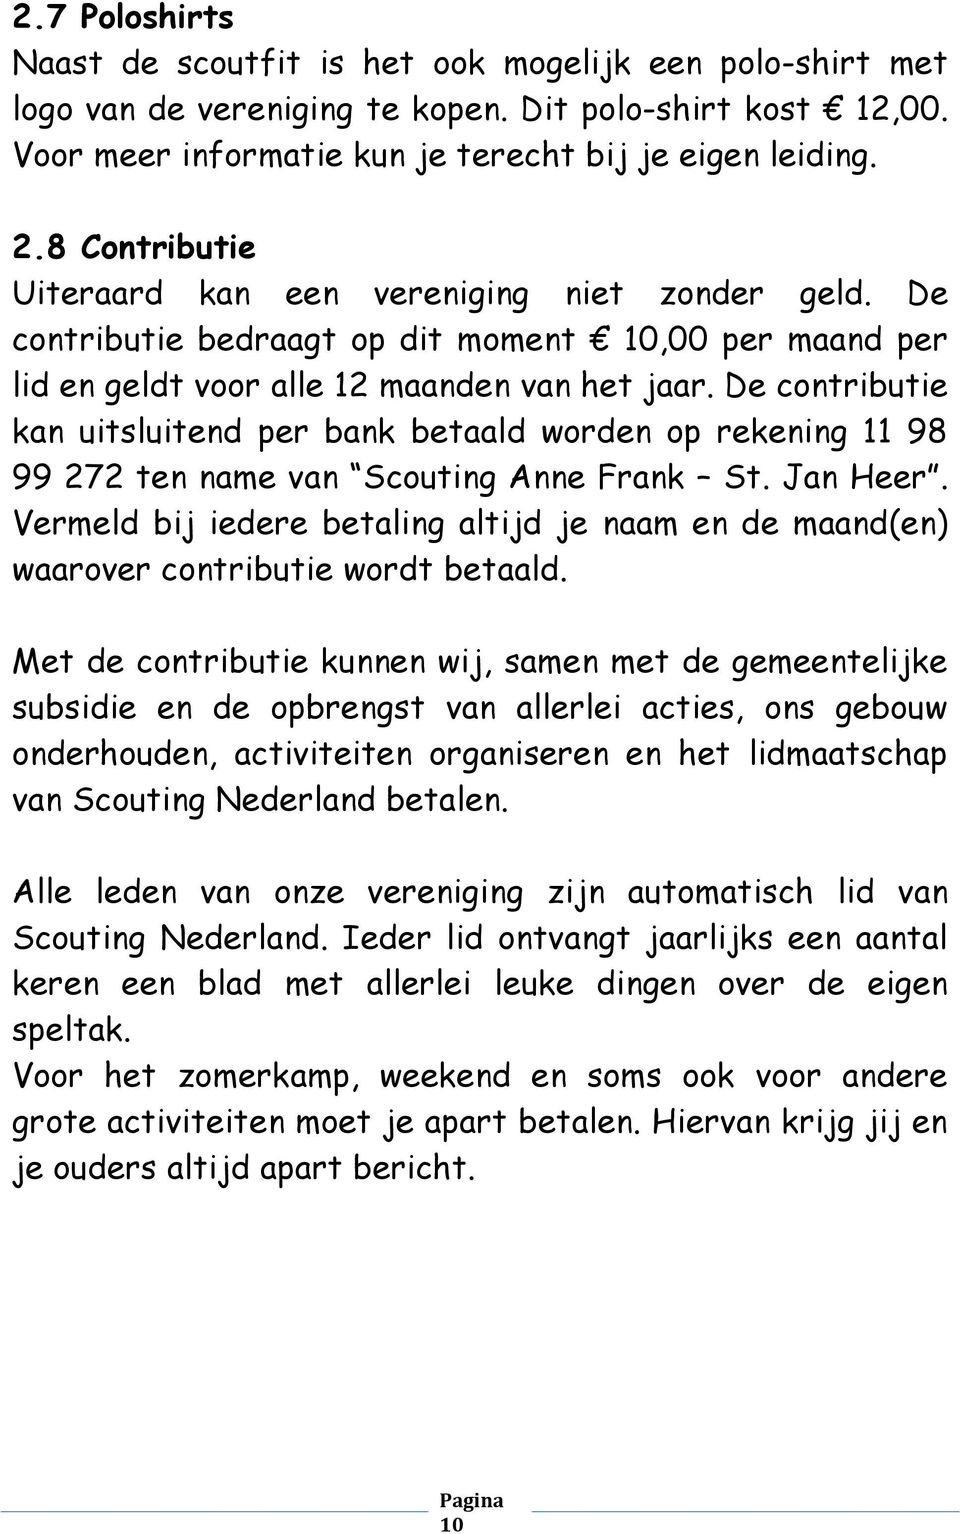 De contributie kan uitsluitend per bank betaald worden op rekening 11 98 99 272 ten name van Scouting Anne Frank St. Jan Heer.